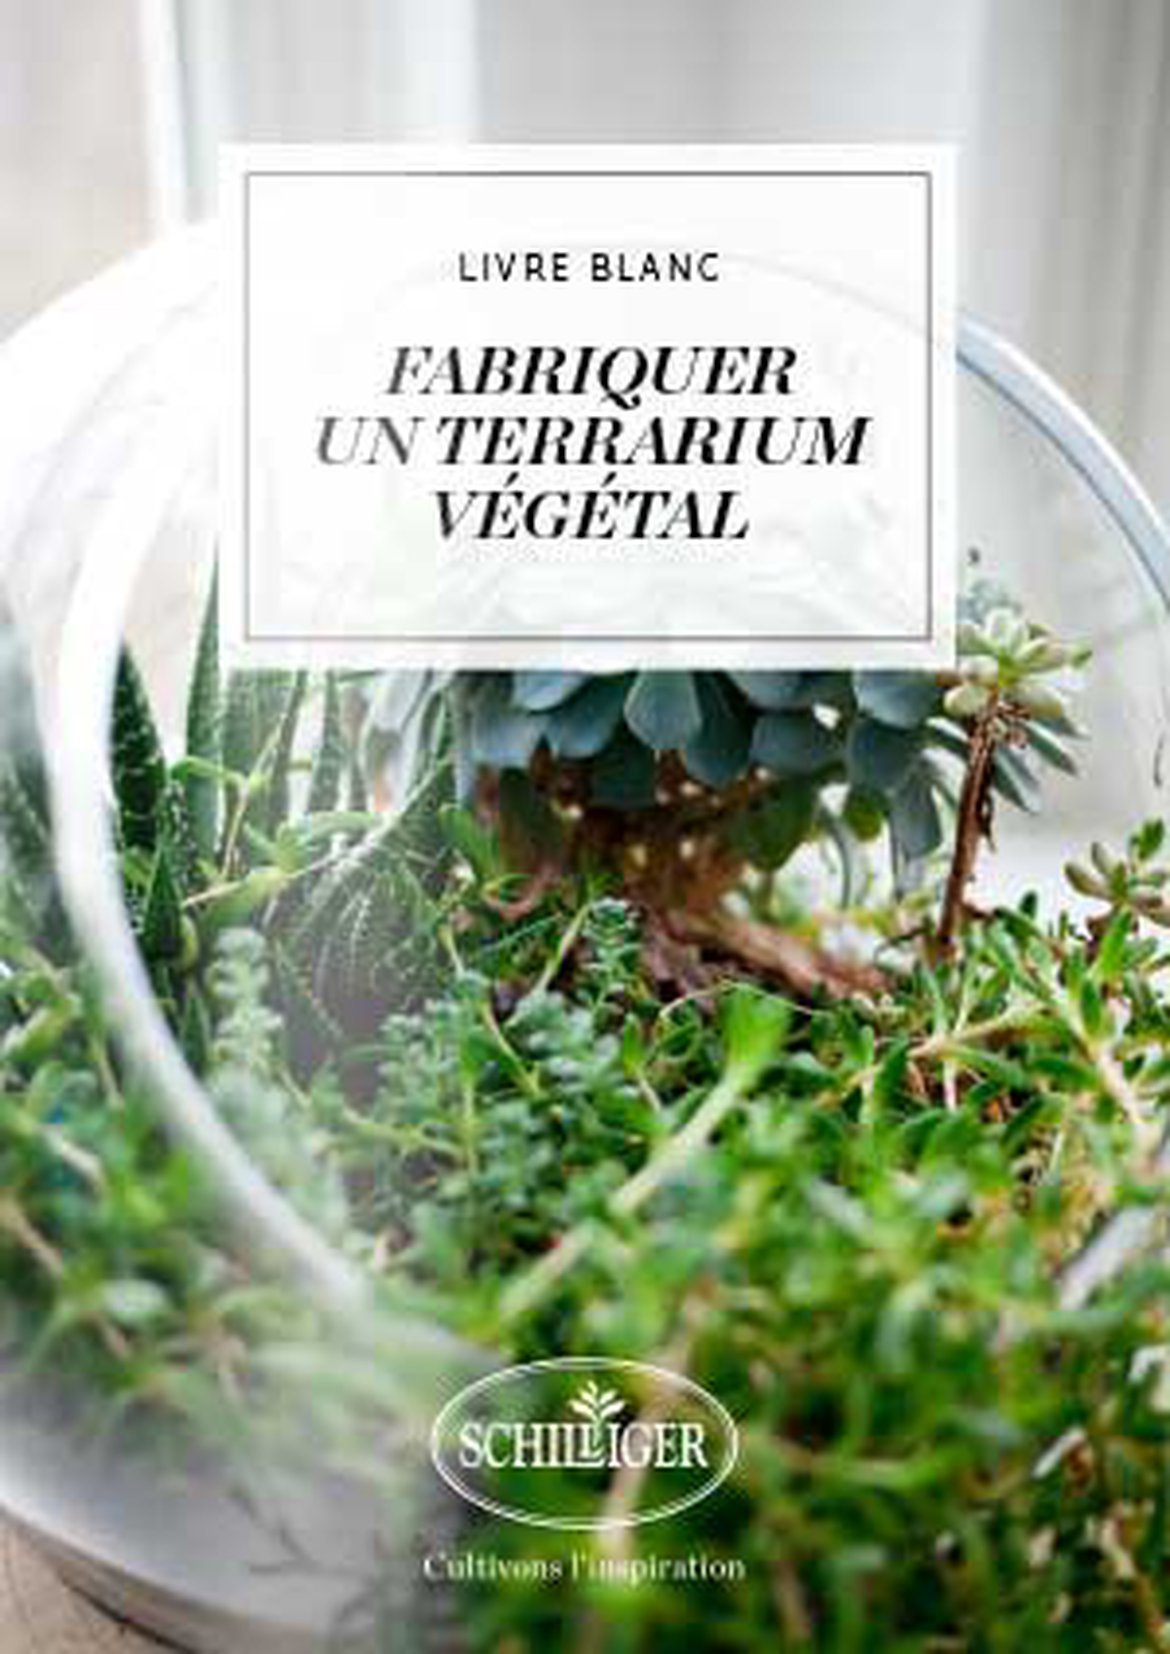 Fabriquer un terrarium végétal